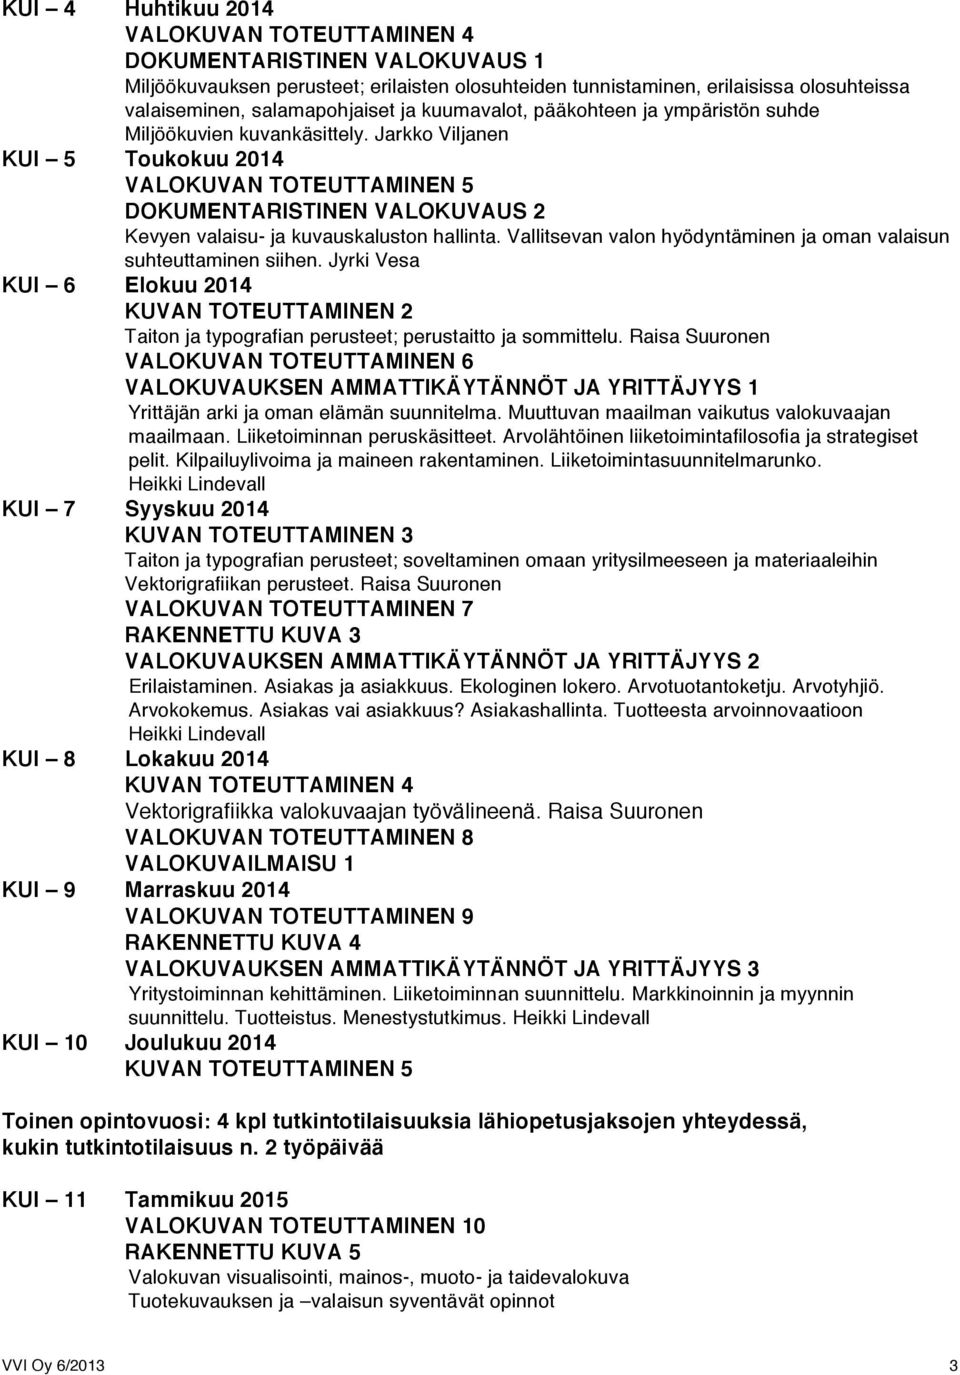 Jarkko Viljanen KUI 5 Toukokuu 2014 VALOKUVAN TOTEUTTAMINEN 5 DOKUMENTARISTINEN VALOKUVAUS 2 Kevyen valaisu- ja kuvauskaluston hallinta.